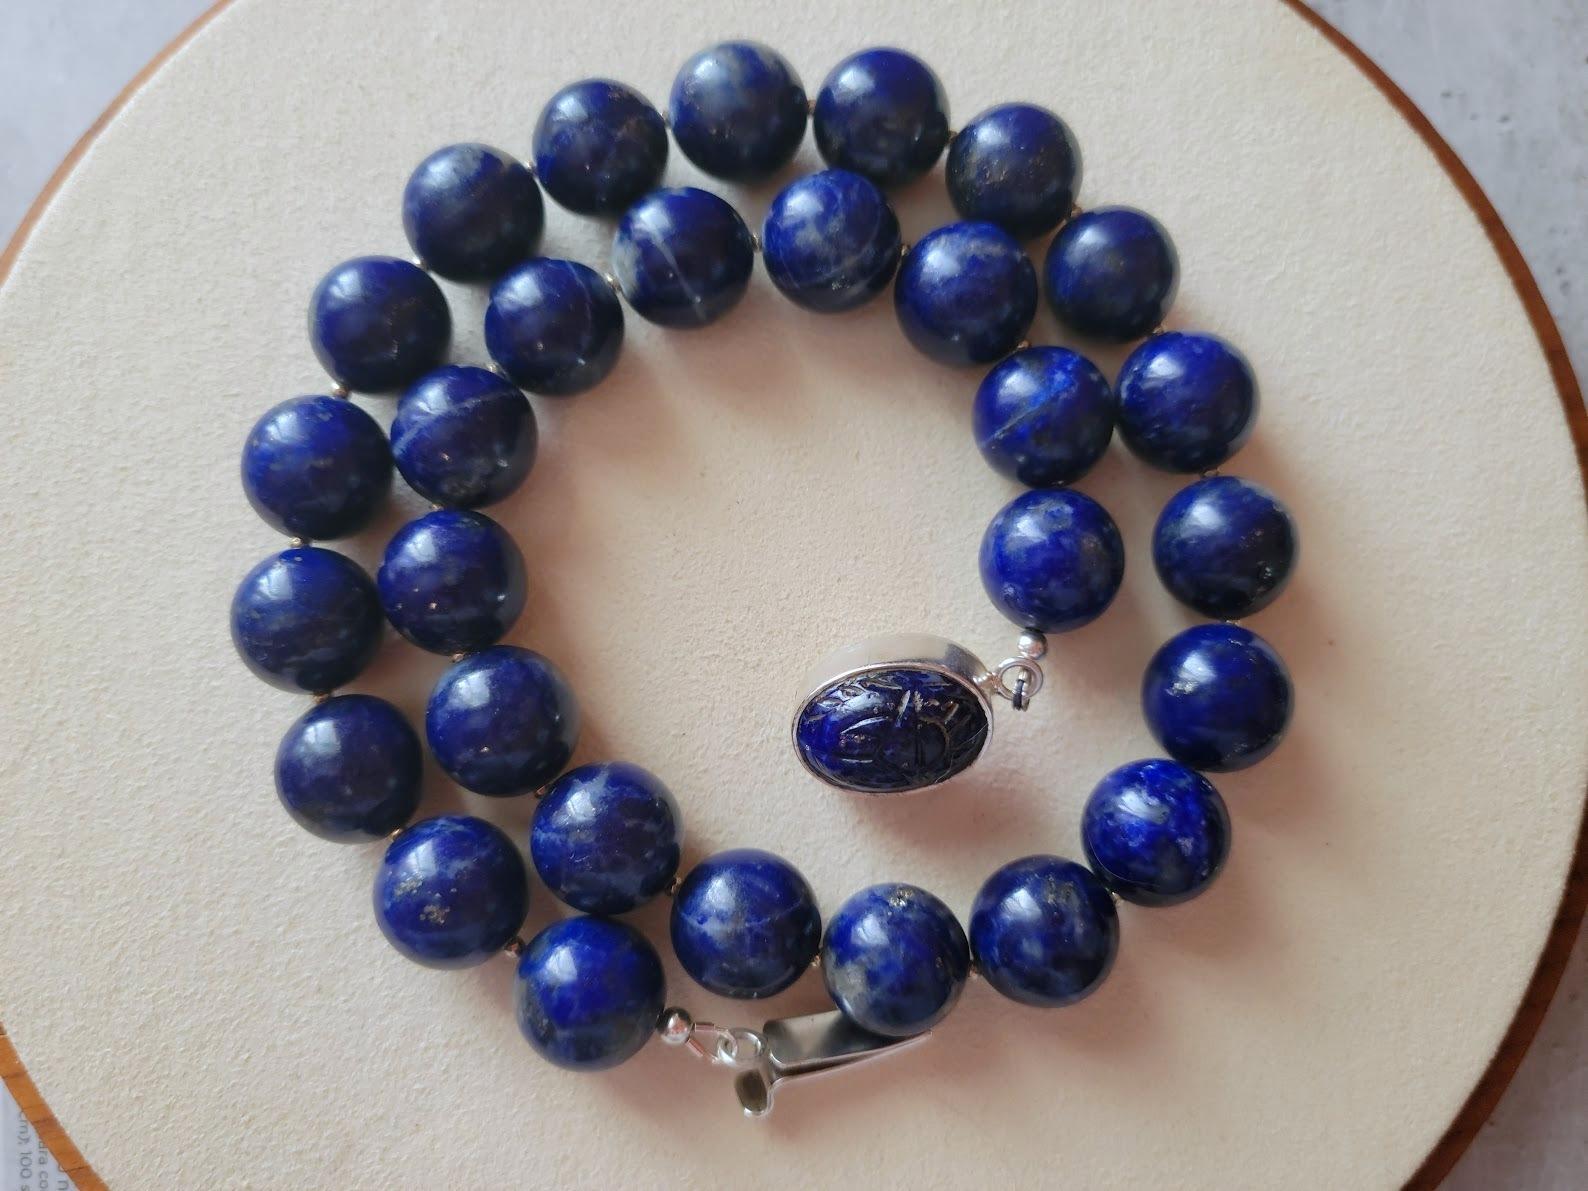 La longueur du collier est de 18,5 pouces (47 cm). La taille des perles rondes lisses est de 14 mm.
Les perles de lapis-lazuli sont indigo, de couleur minuit et très saturées. Le lapis-lazuli présente des taches visibles de calcite et de pyrite